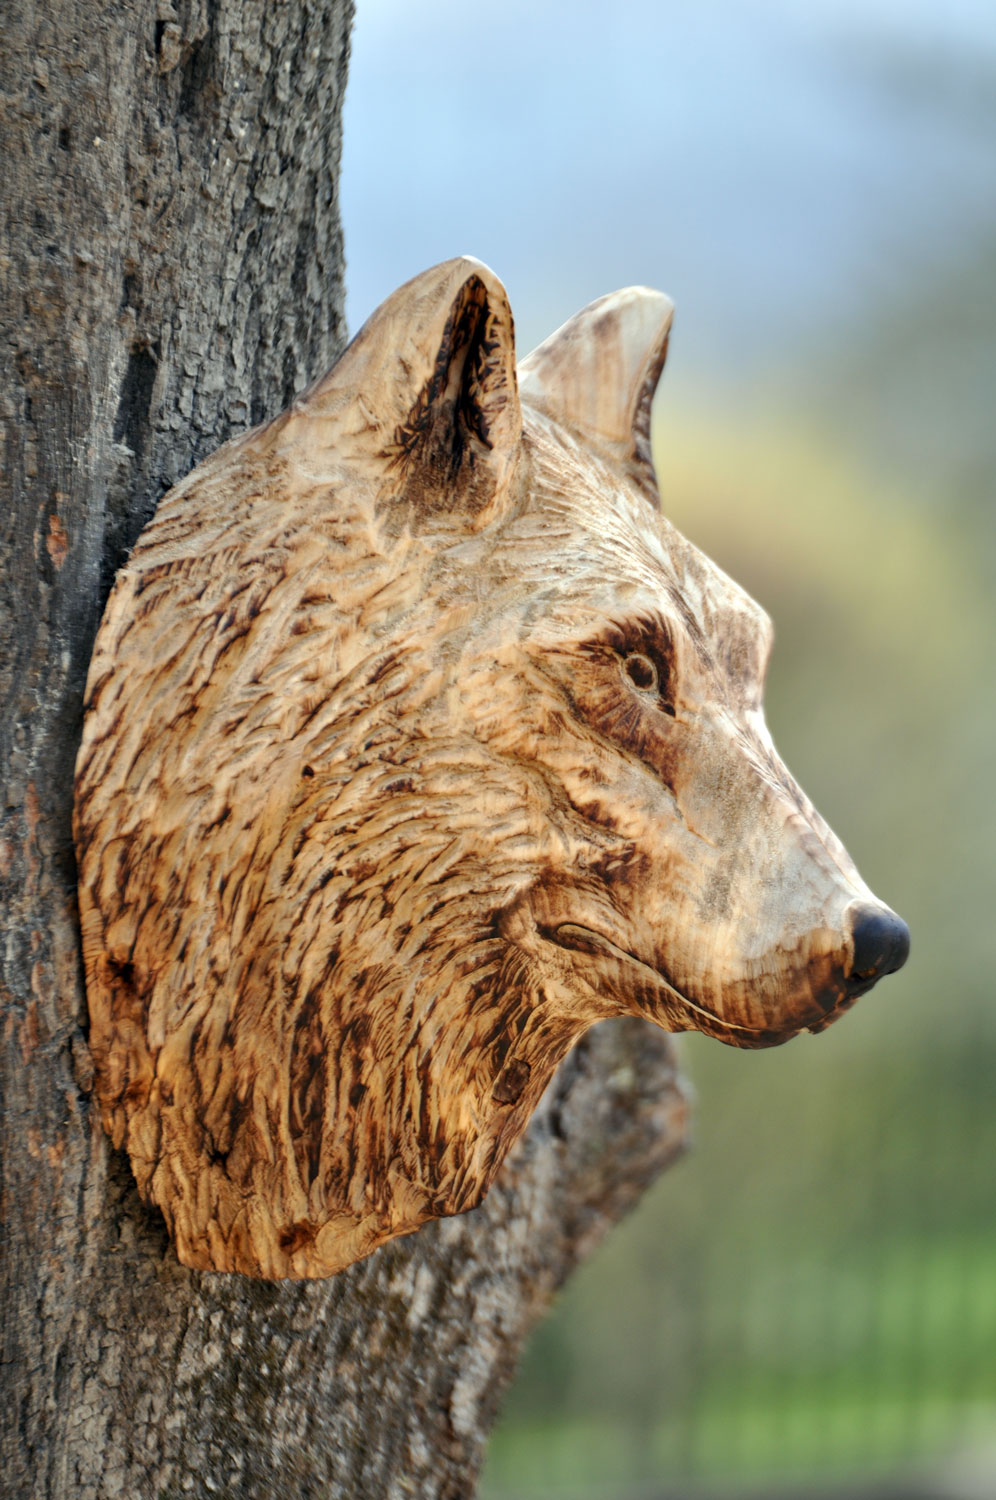 vlk-drevorezba-plastika-vyrezavani-carwing-woodcarving-trofej-hlava-radekzdrazil-20190331-06